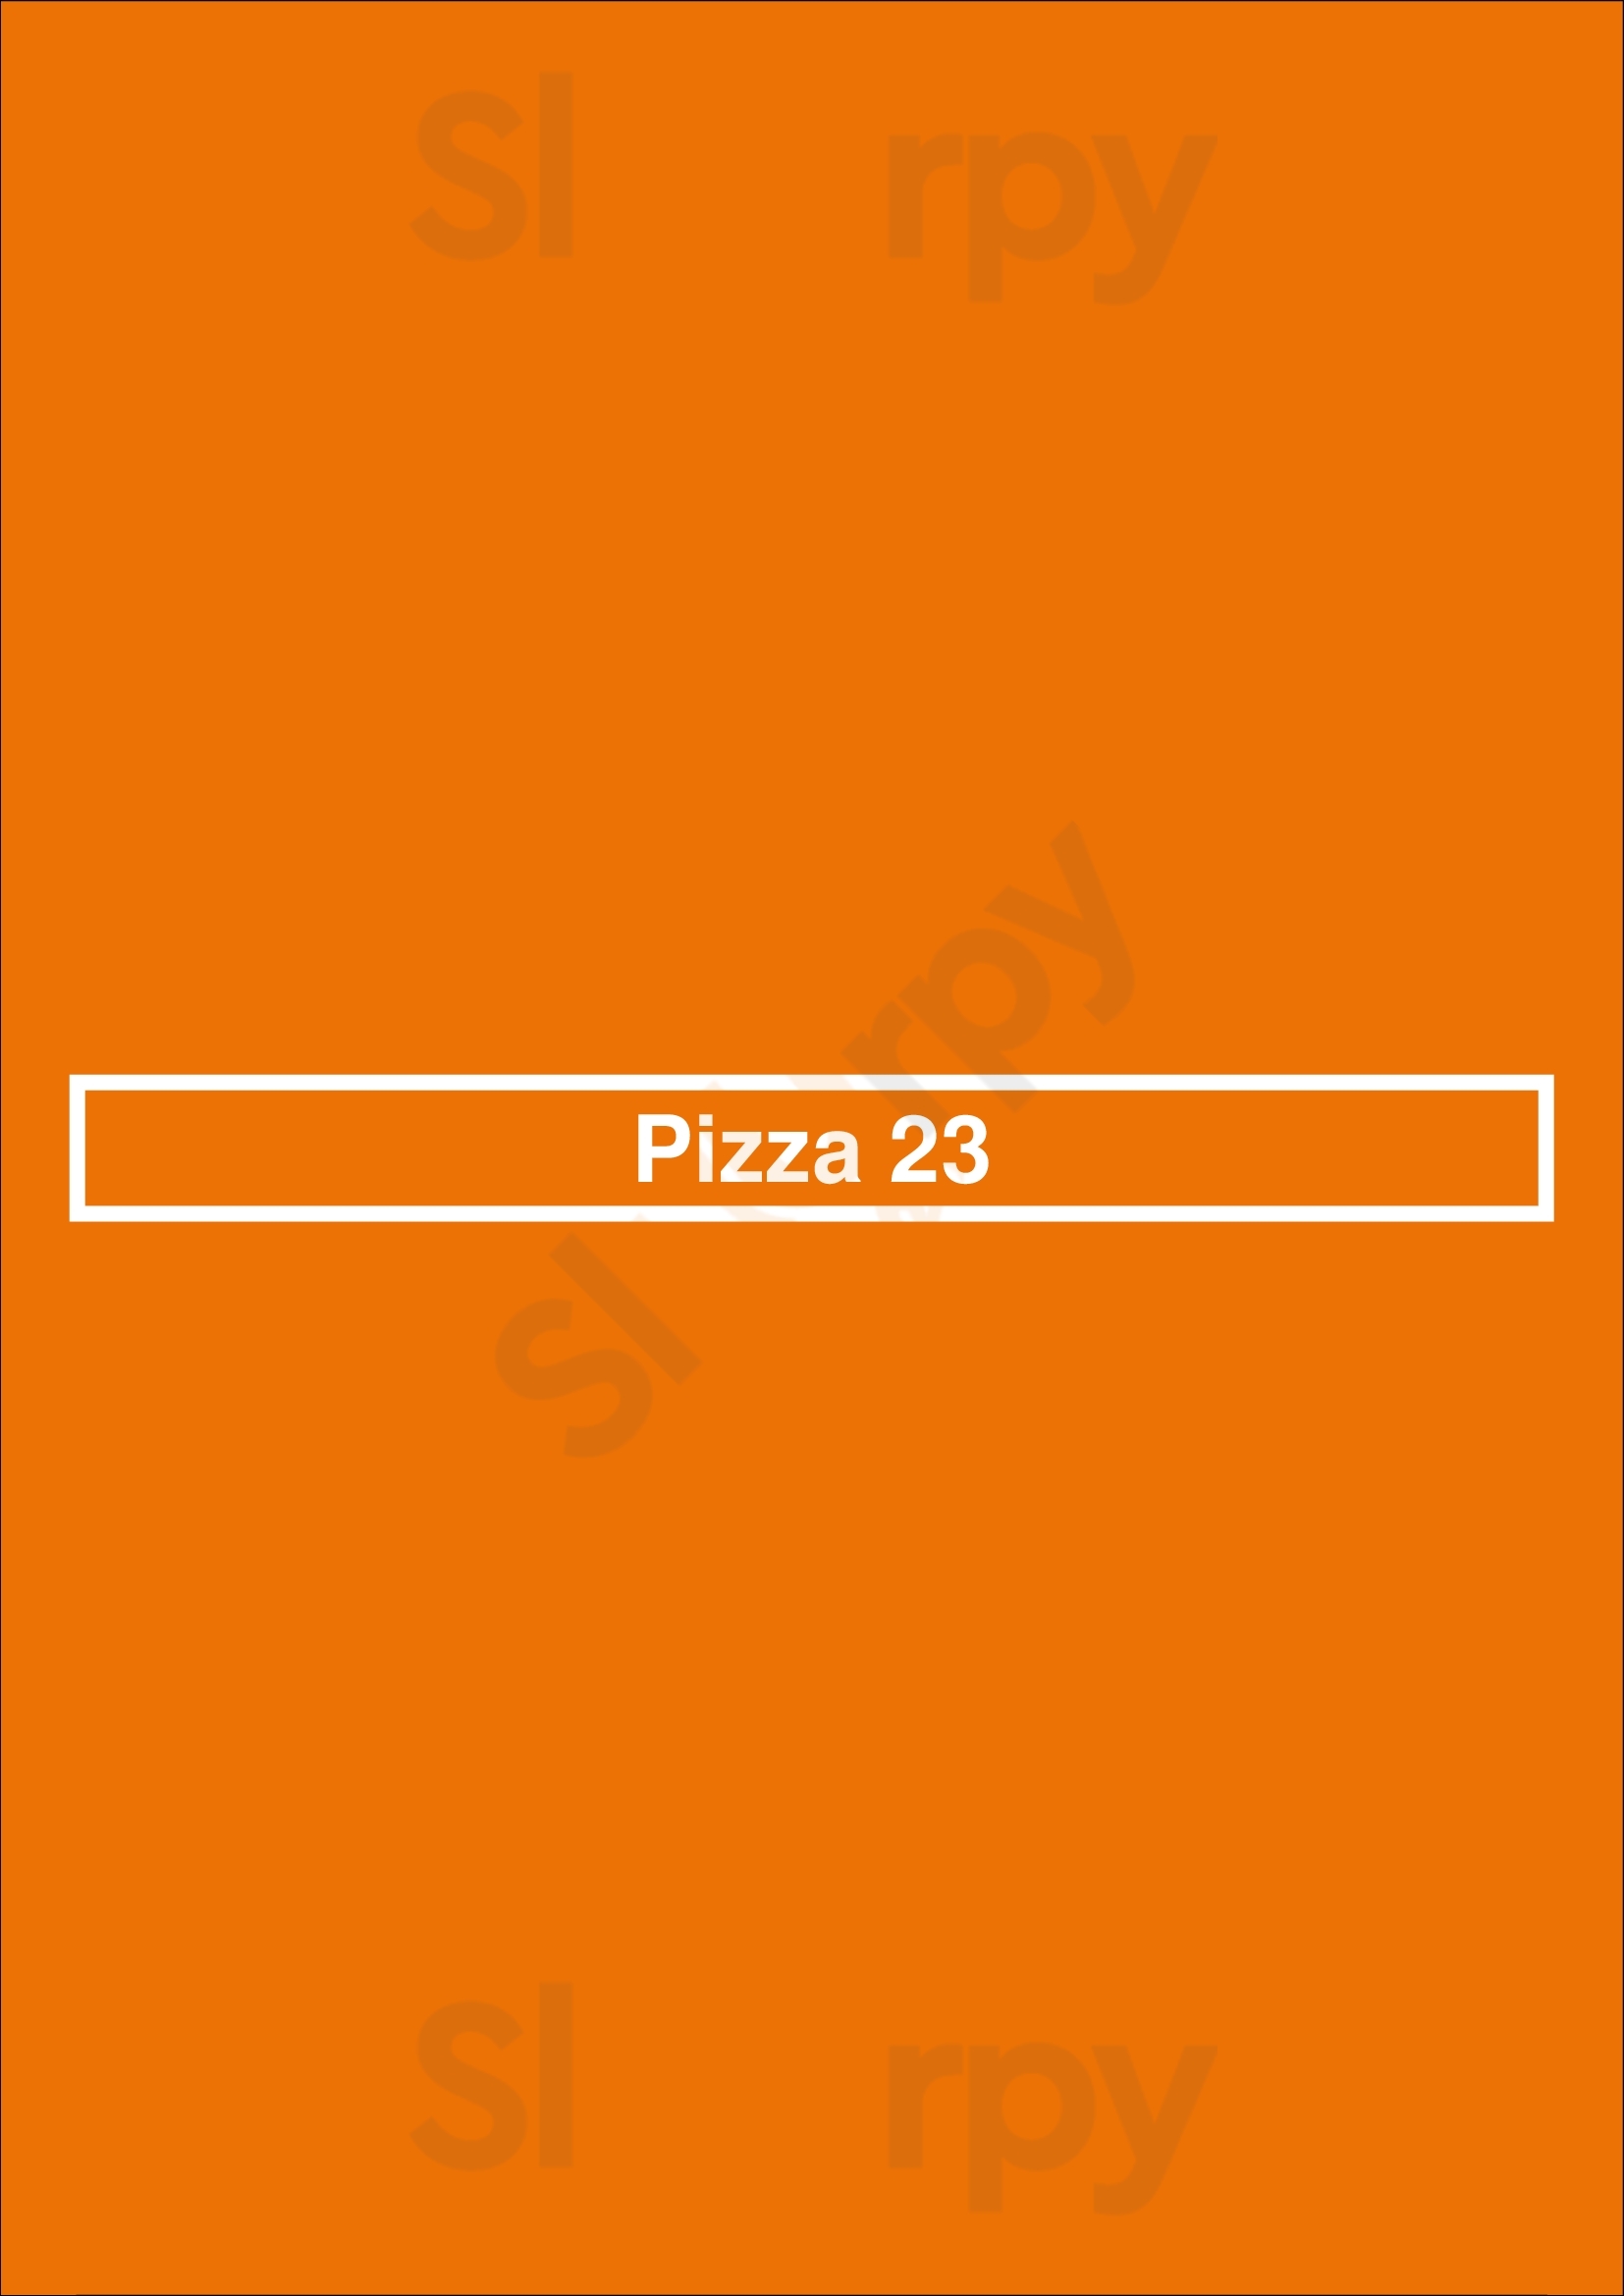 Pizza 23 Oklahoma City Menu - 1